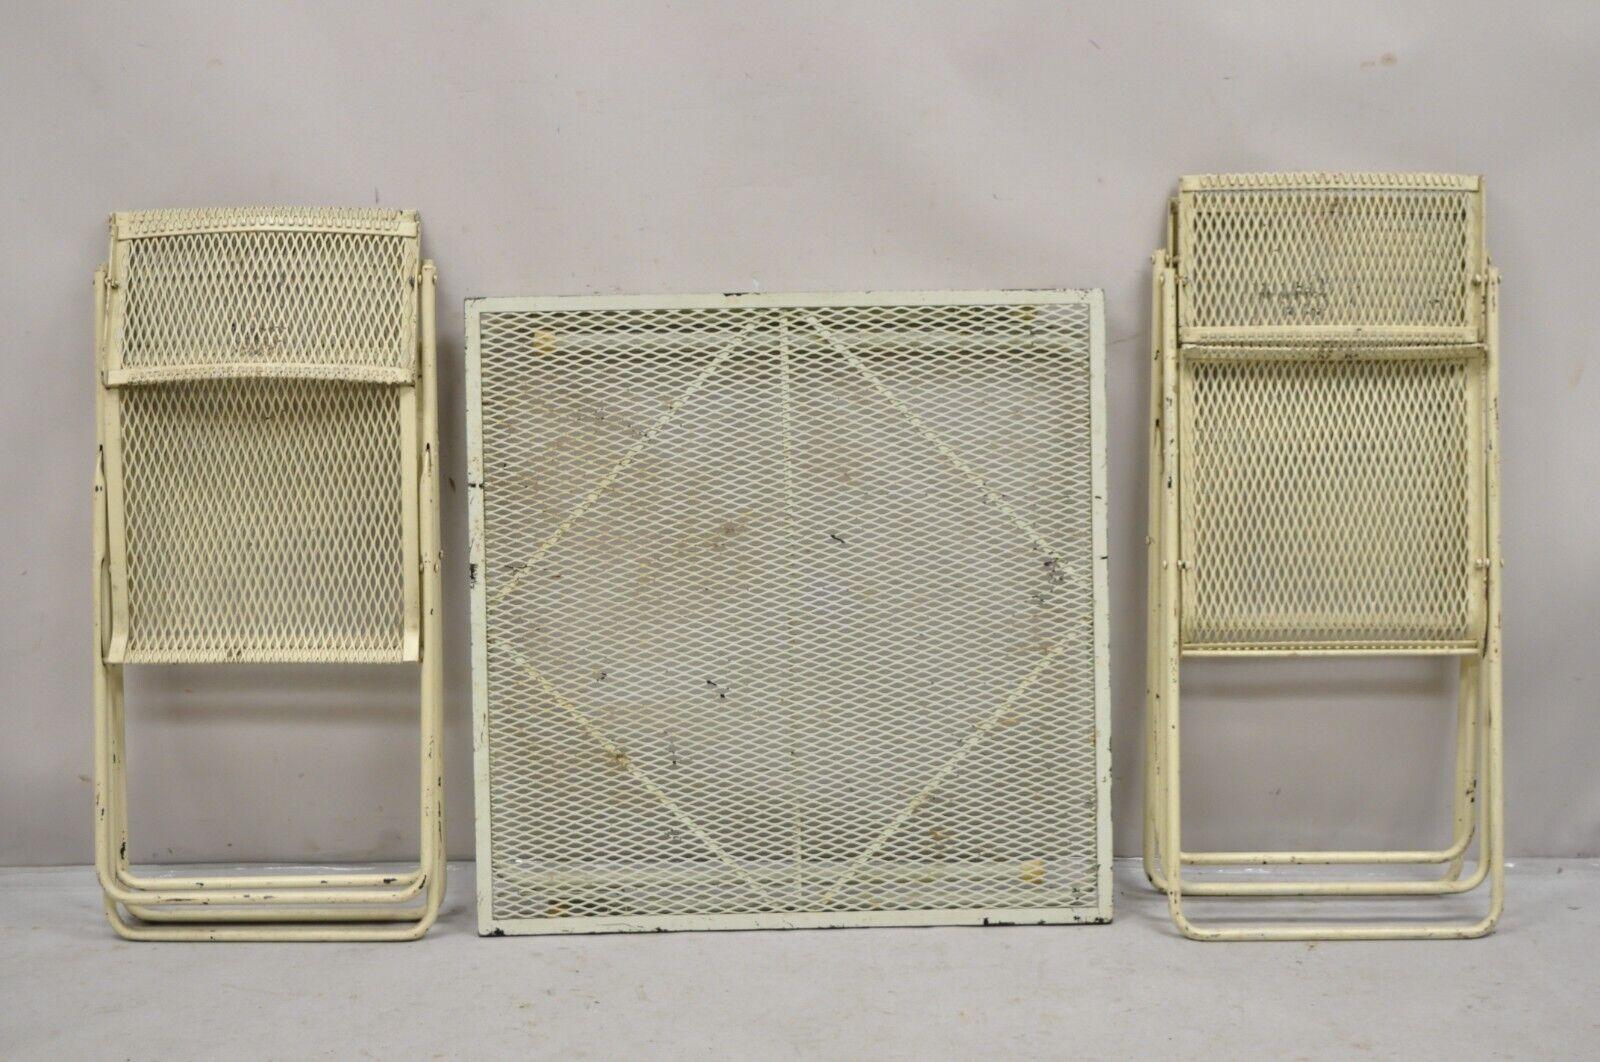 Vintage Mid Century Wrought Iron Industrial Folding Card Game Table Set 5 Pc Set. Der Artikel besteht aus 4 Klappstühlen mit schwenkbarer Rückenlehne und einem Klapptisch, Metallgitterrahmen, klappbares Design, beige lackiert, sehr einzigartiges